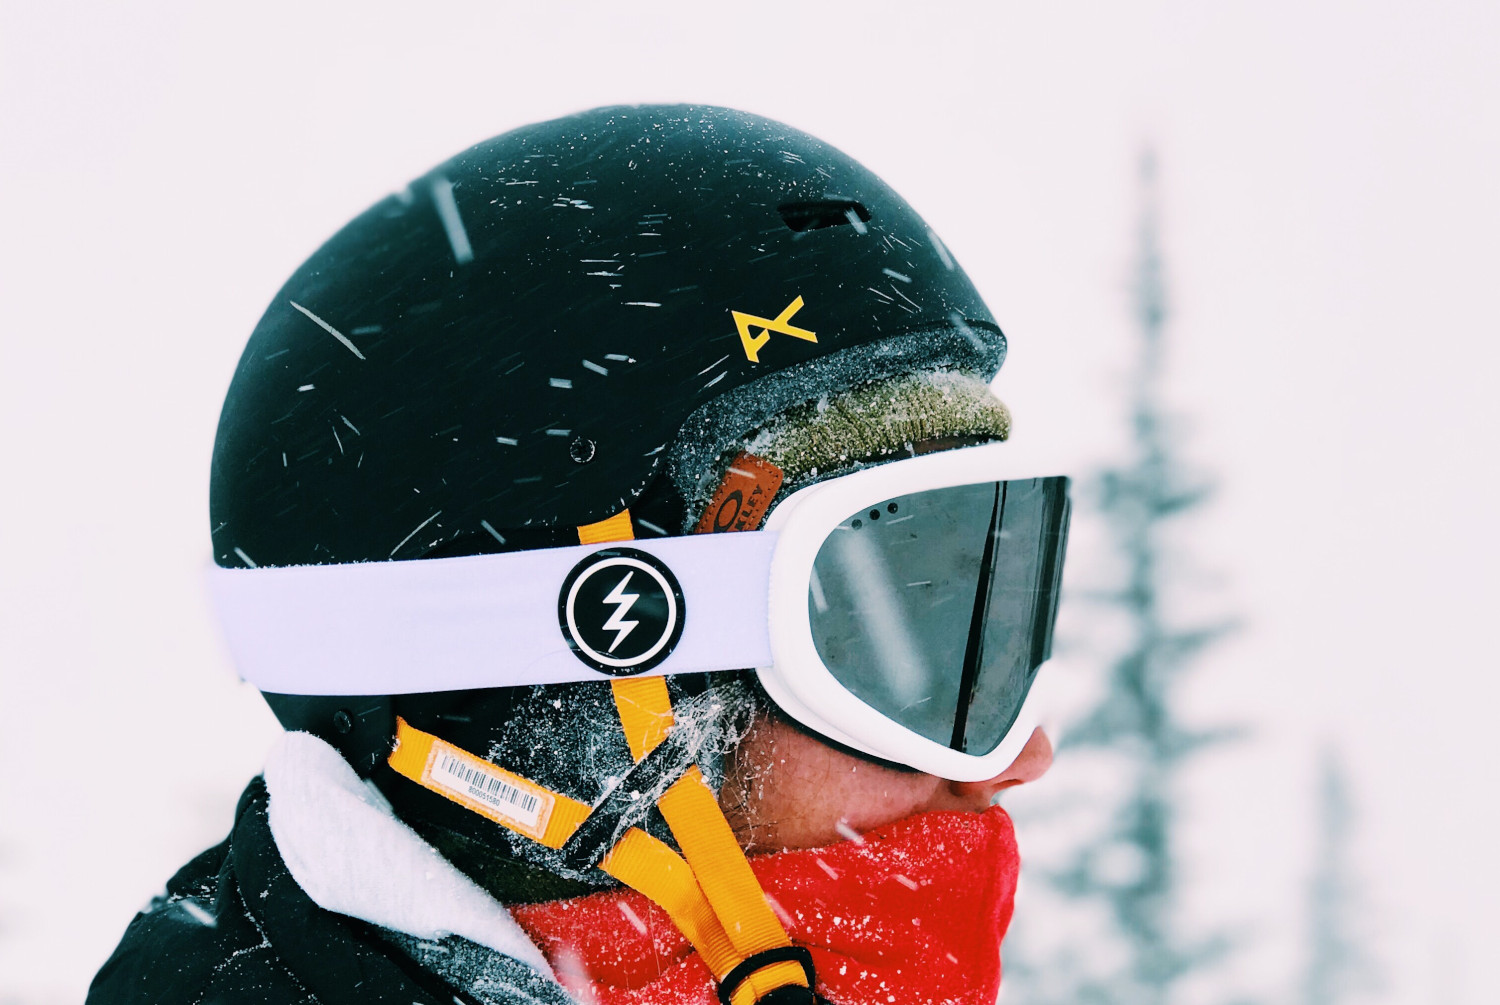 Meowtutu Skibrille Snowboard Brille Rahmenlose Snowboardbrille Doppel-Objektiv UV-Schutz Anti-Fog Ski Goggles mit Magnet Wechselobjektive Brille Für Damen Herren Silber